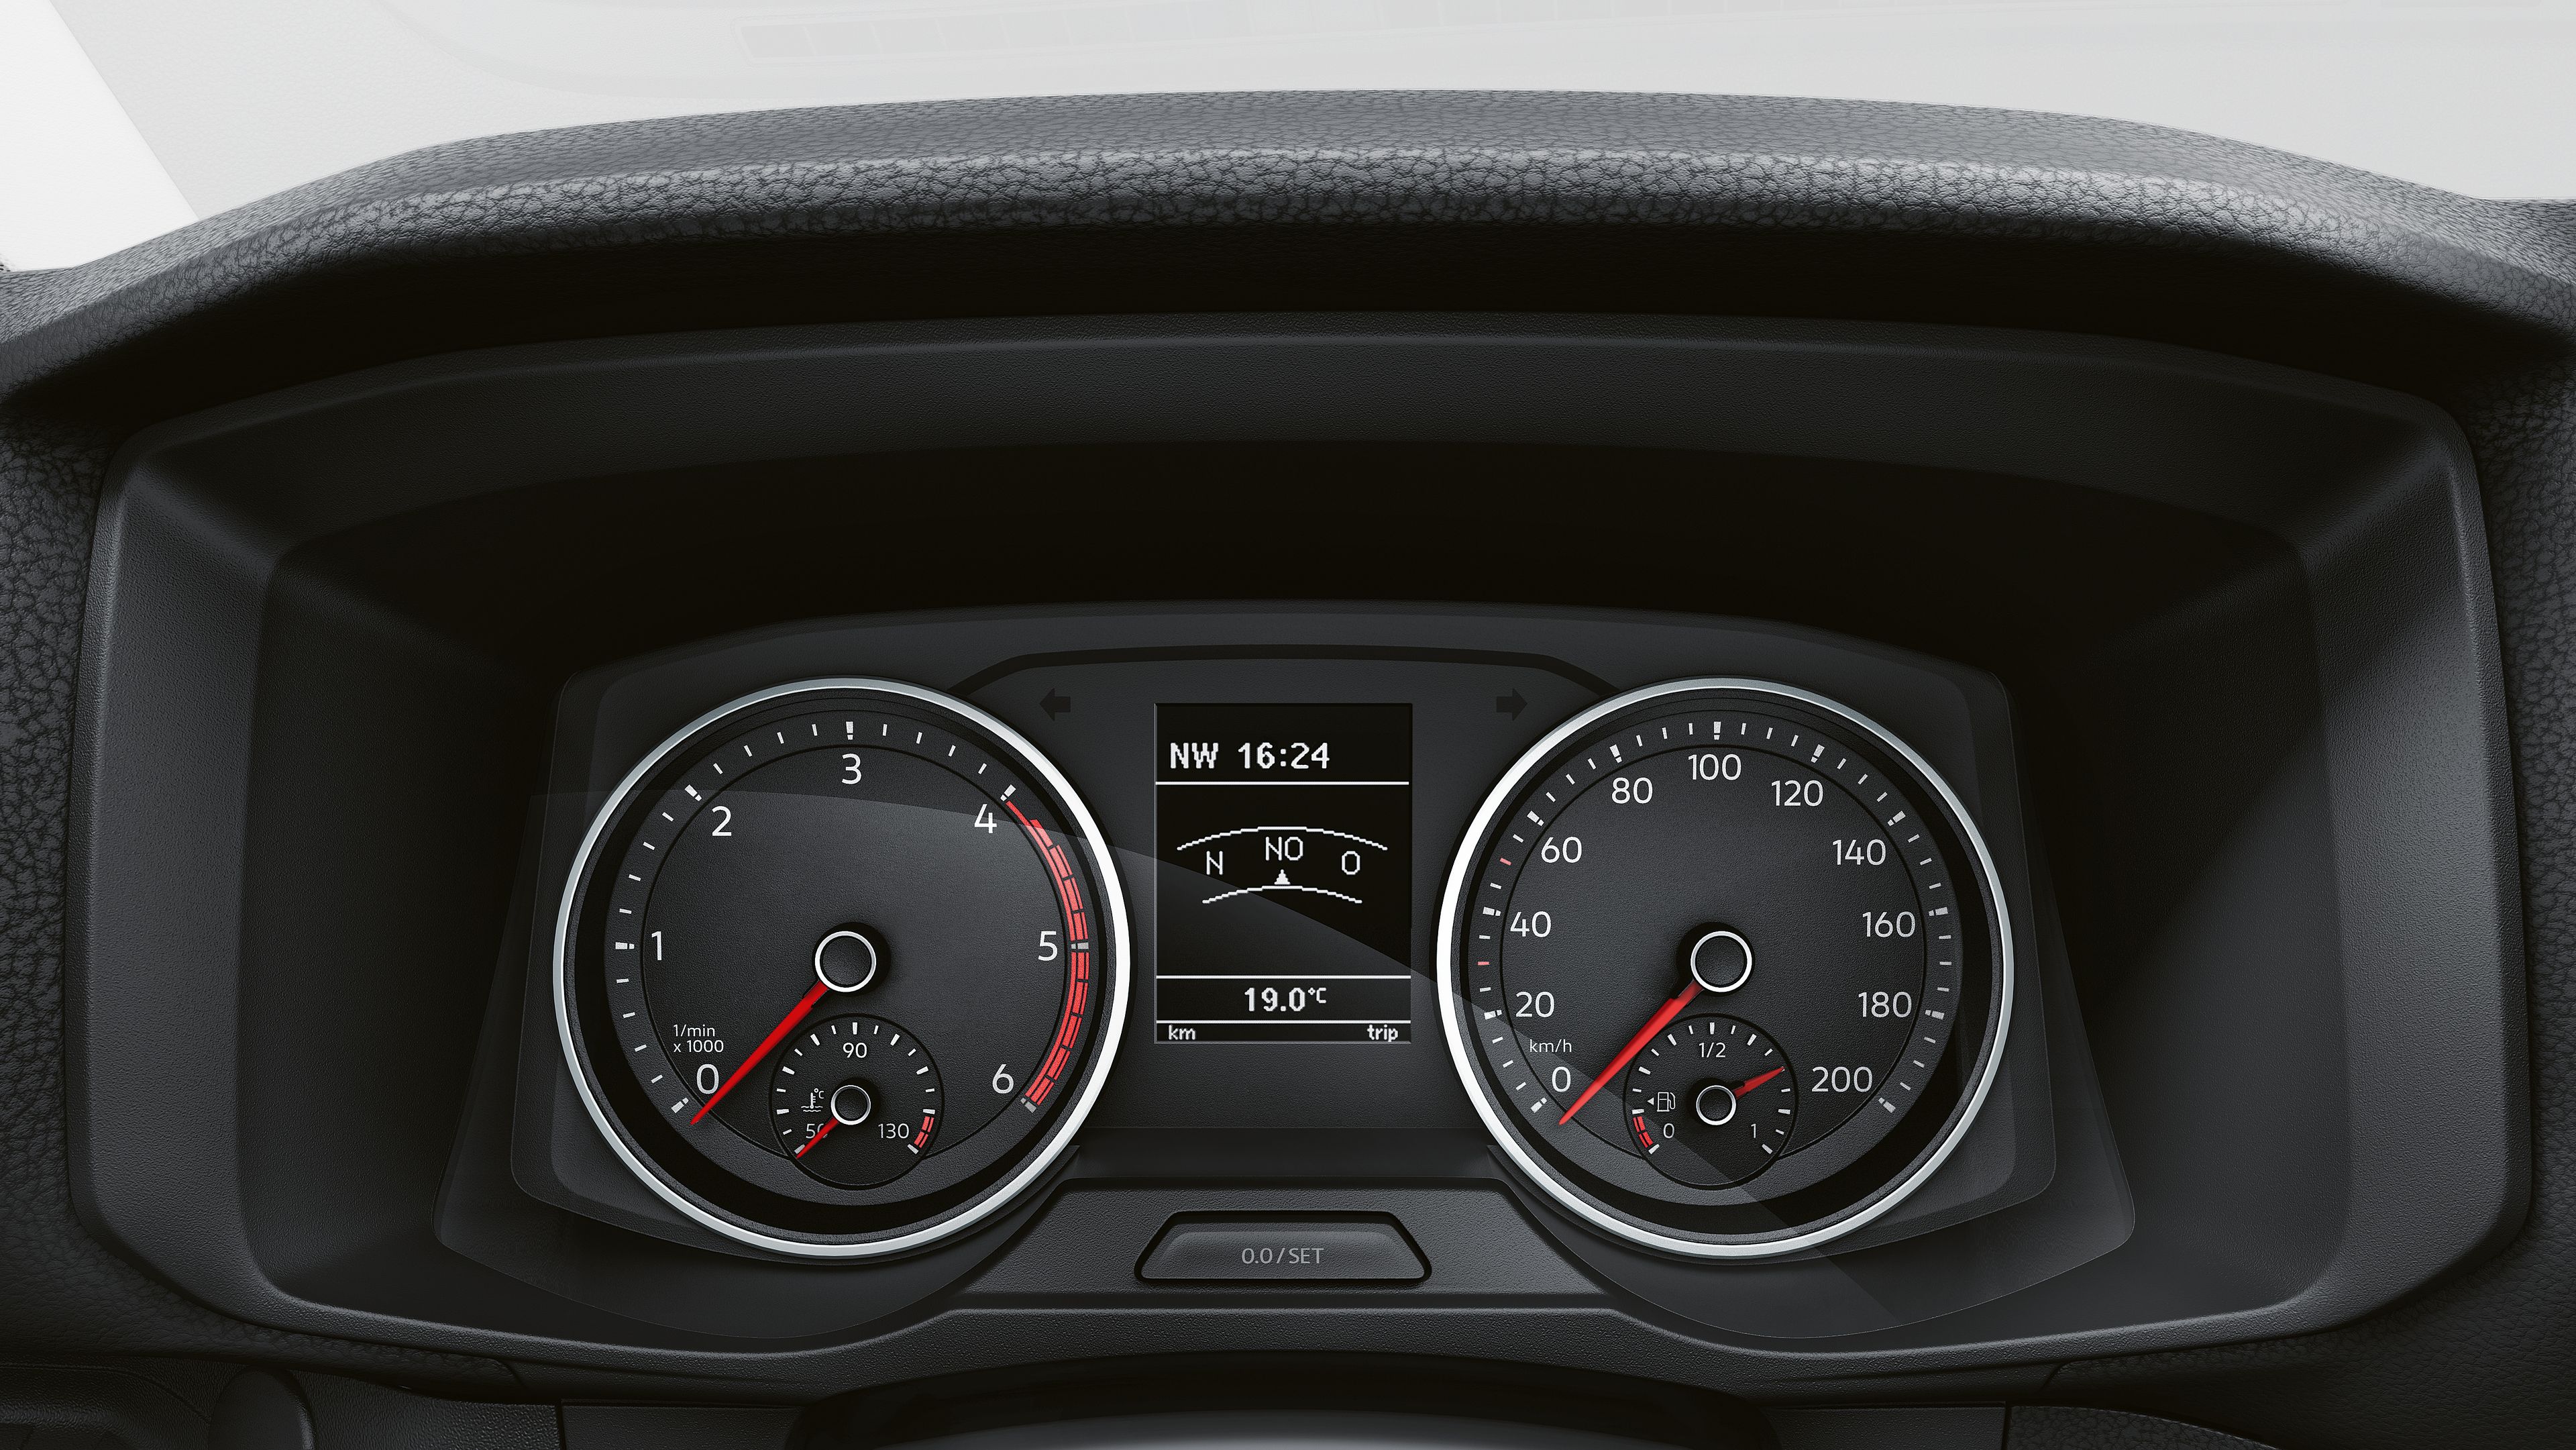 Das Display der Multifunktionsanzeige zeigt aktuelle Infos wie die Fahrtrichtung, die Uhrzeit und die Außentemperatur an. 